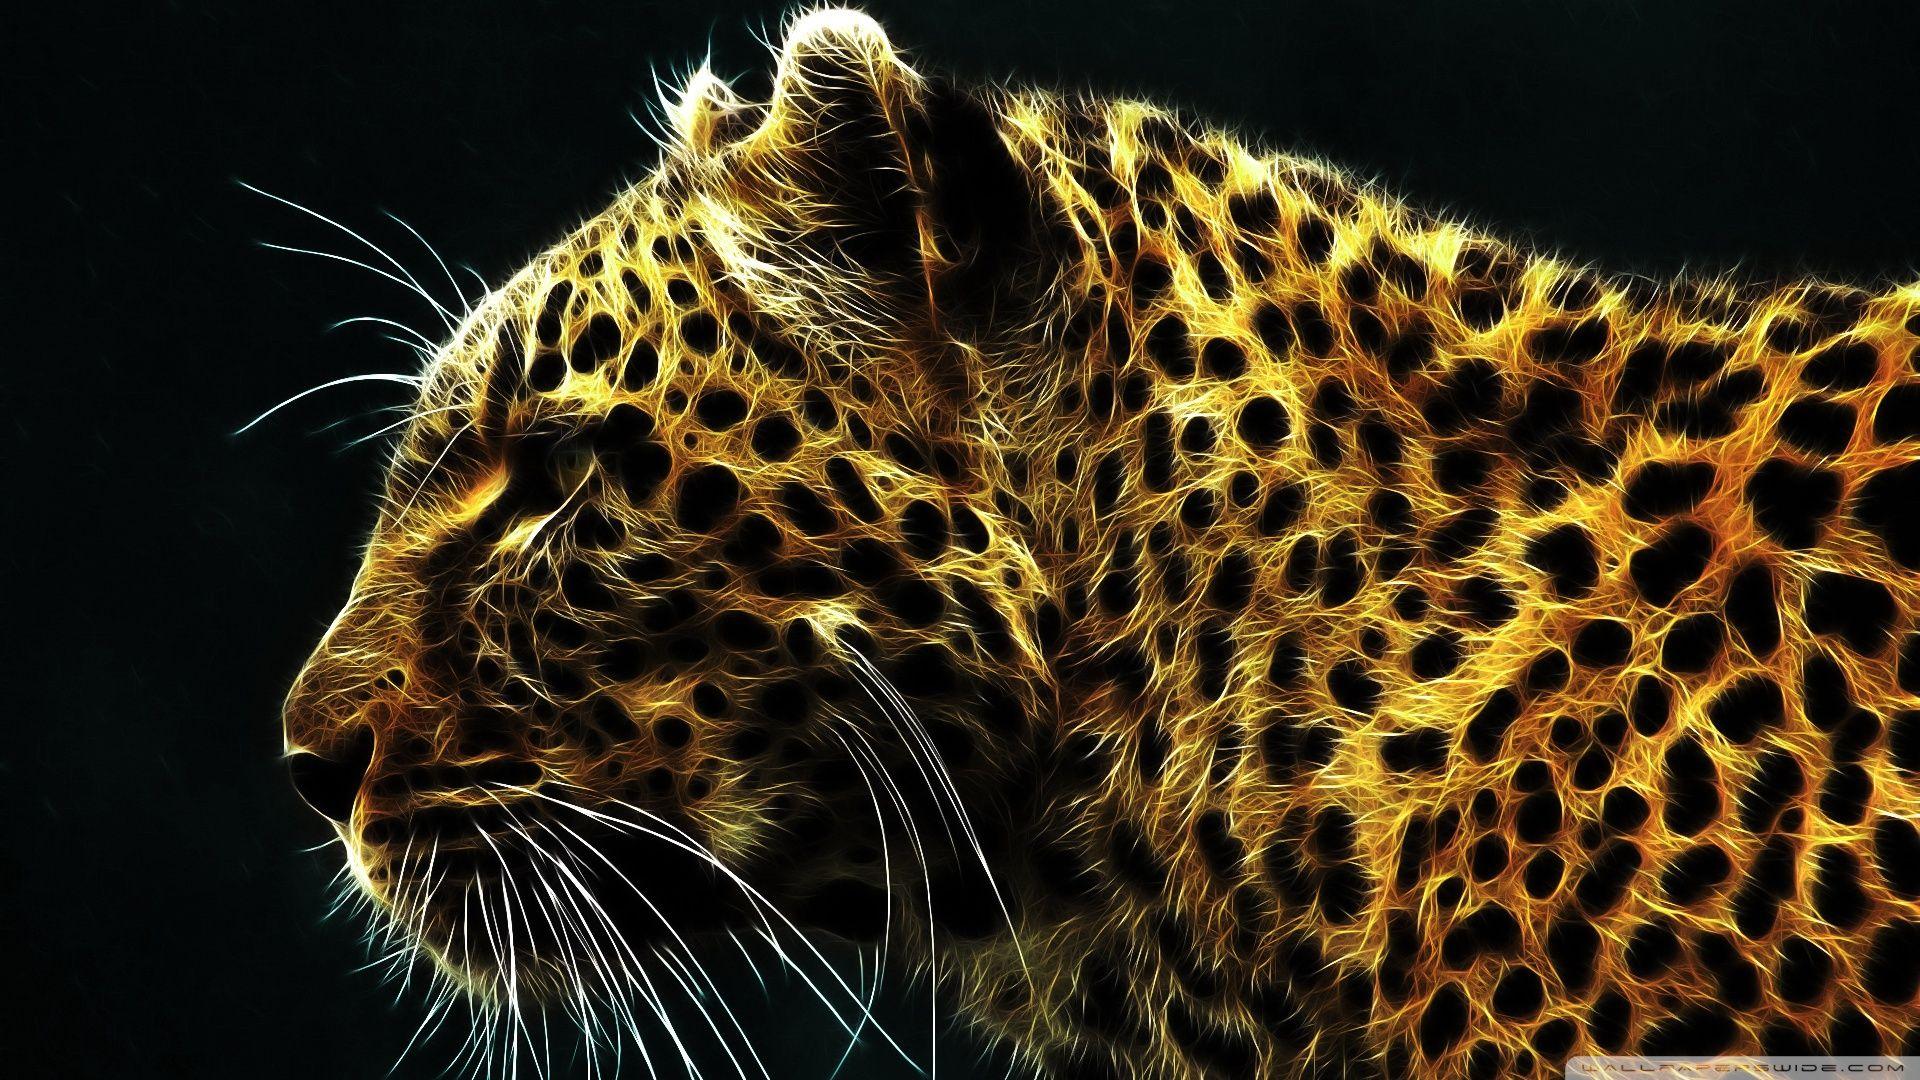 Cheetah In Fire ❤ 4K HD Desktop Wallpaper for 4K Ultra HD TV